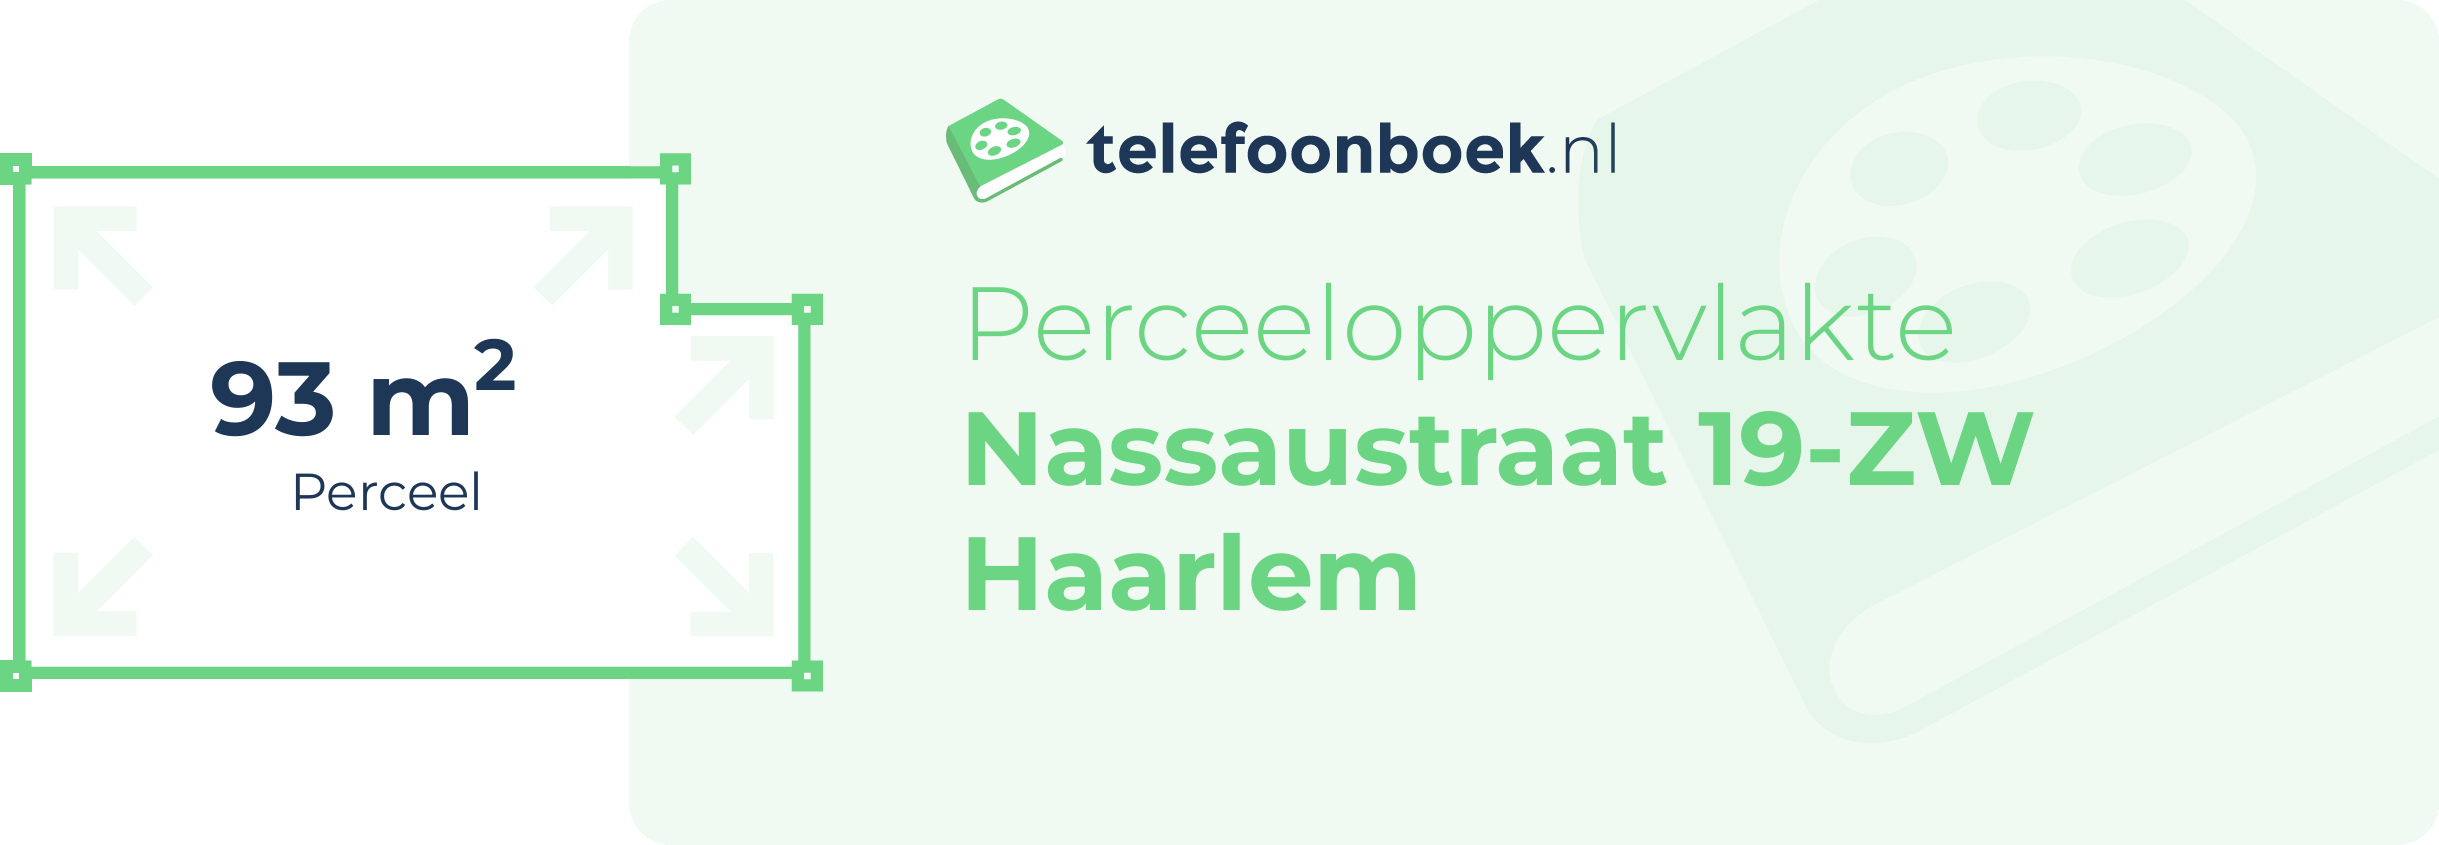 Perceeloppervlakte Nassaustraat 19-ZW Haarlem